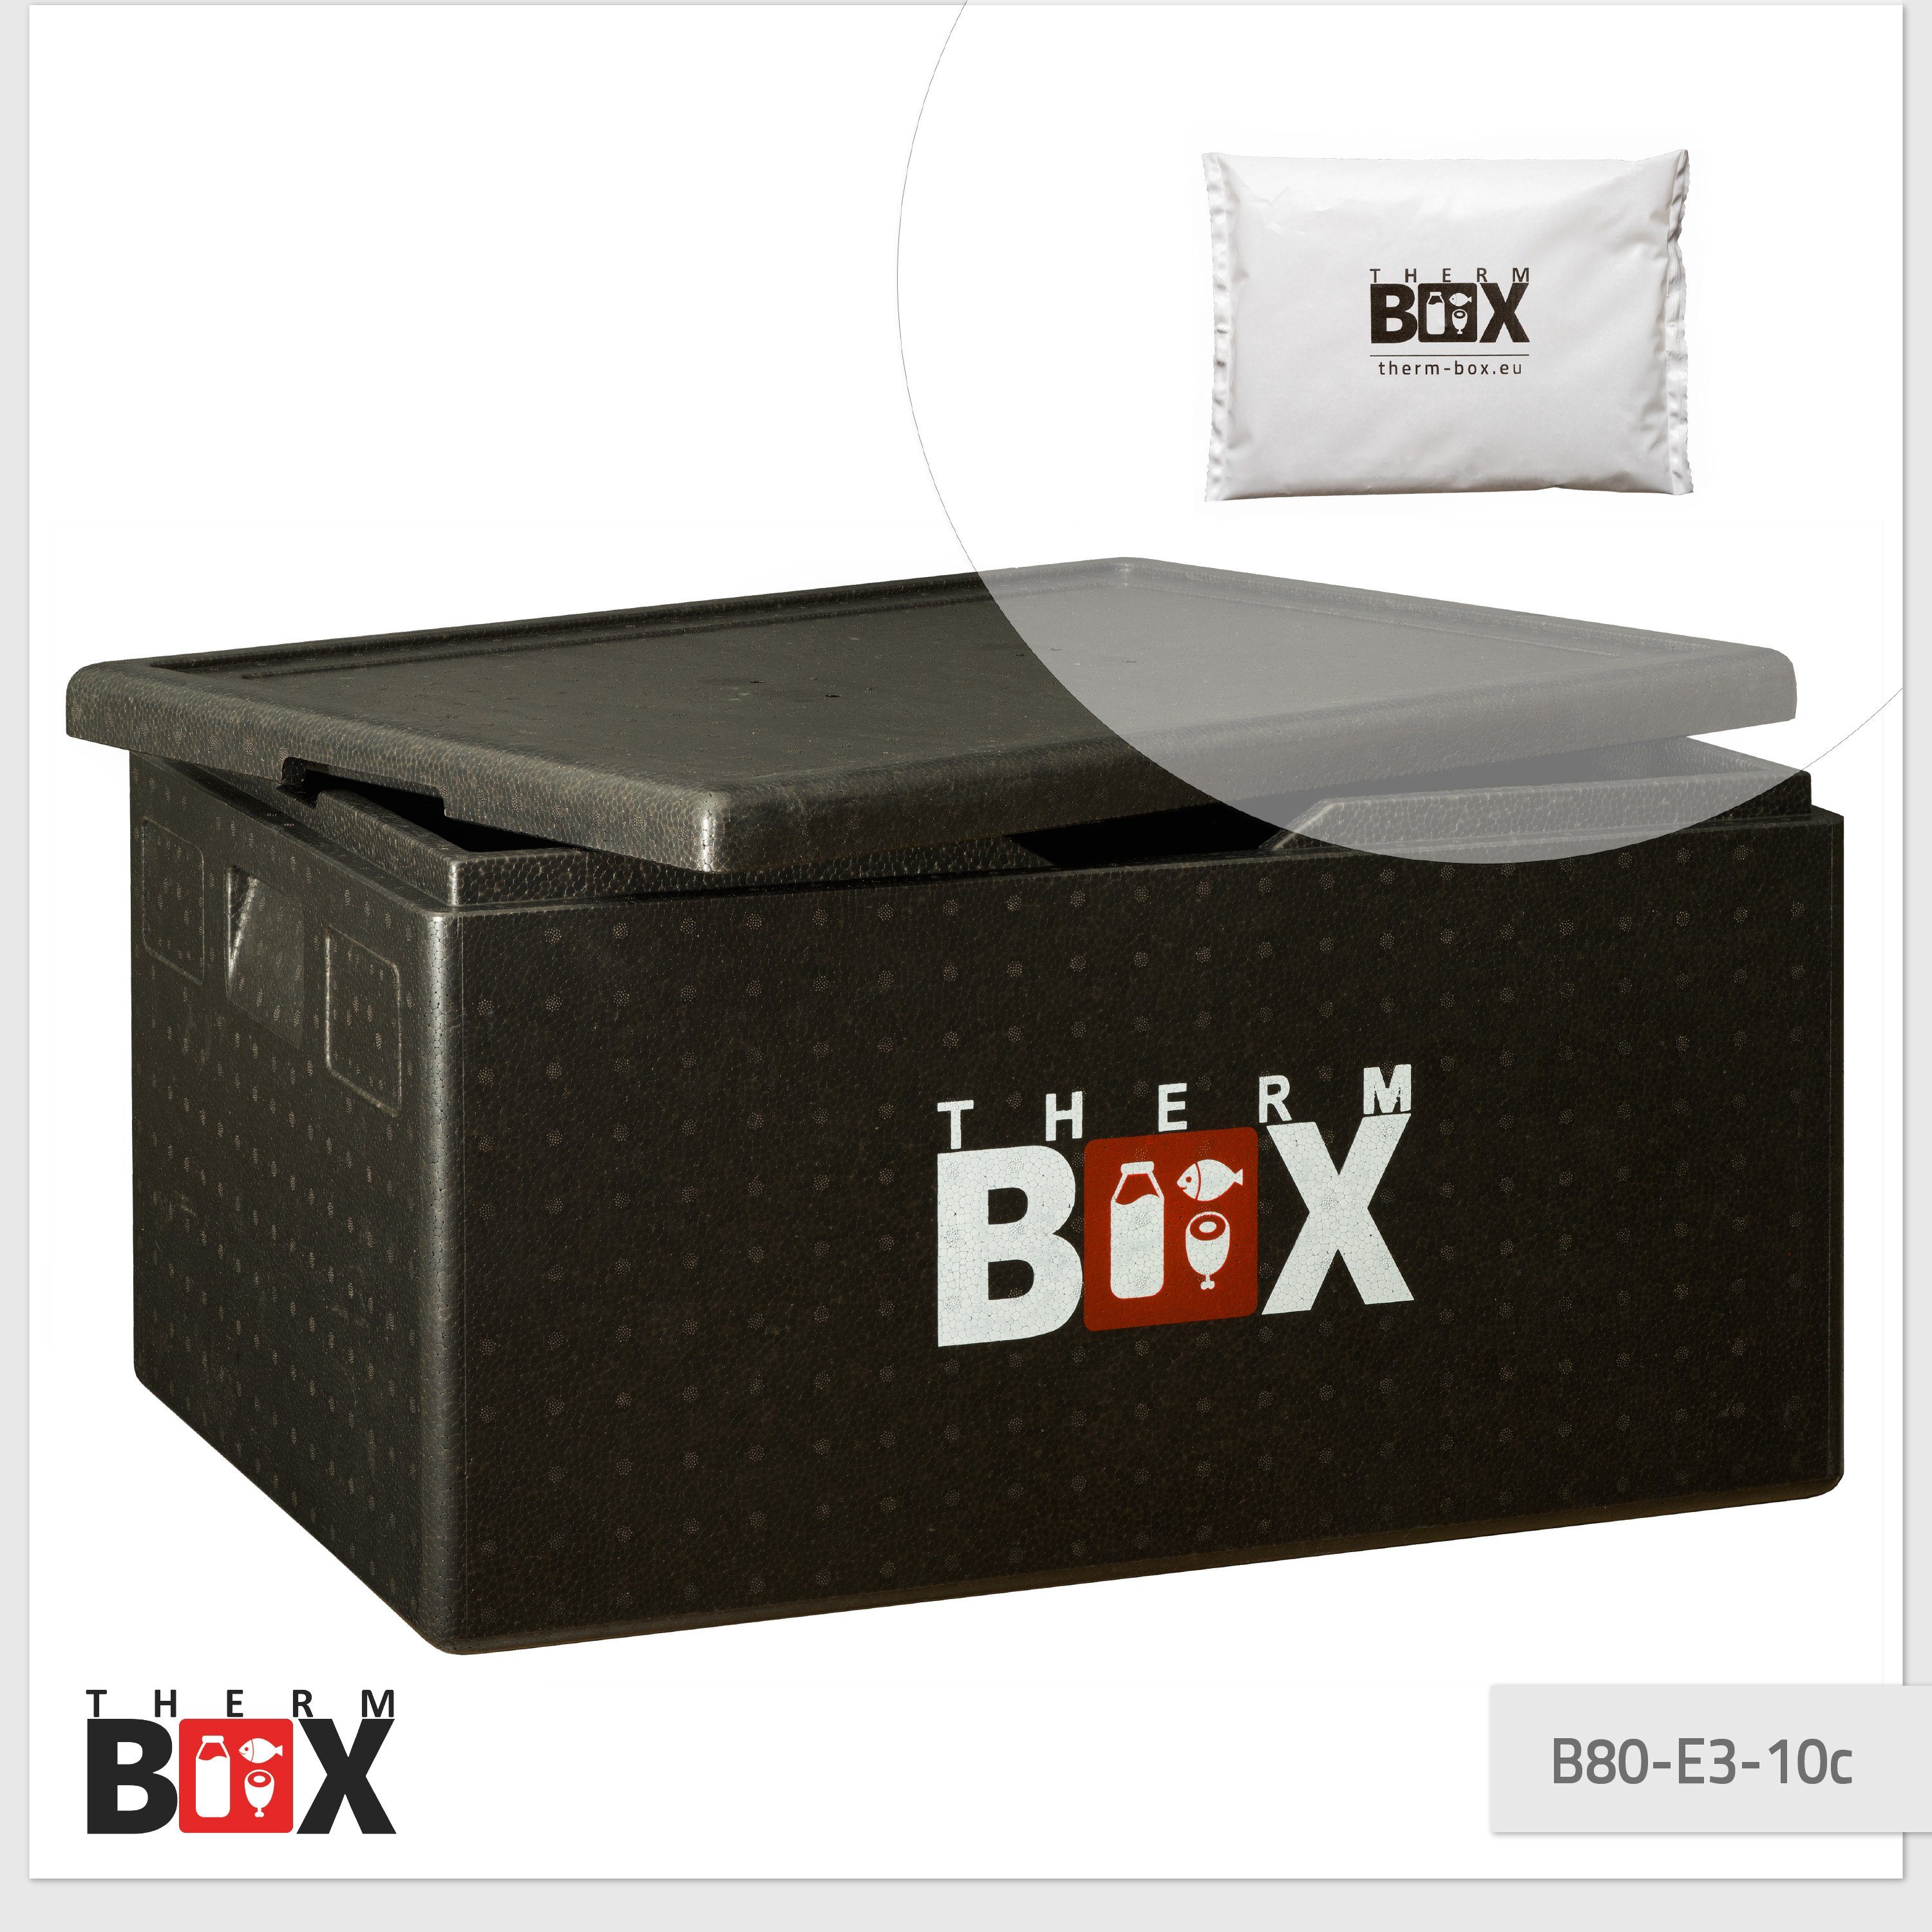 Kiste Thermbox 62x42x32cm Transportbox 10 für Styropor-Piocelan, mit 80L Kühlakku 0-tlg., Thermobehälter Innen (1, Styroporbox B80 mit THERM-BOX Kühlbox Kühlkissen), E3 Kühlkissen,